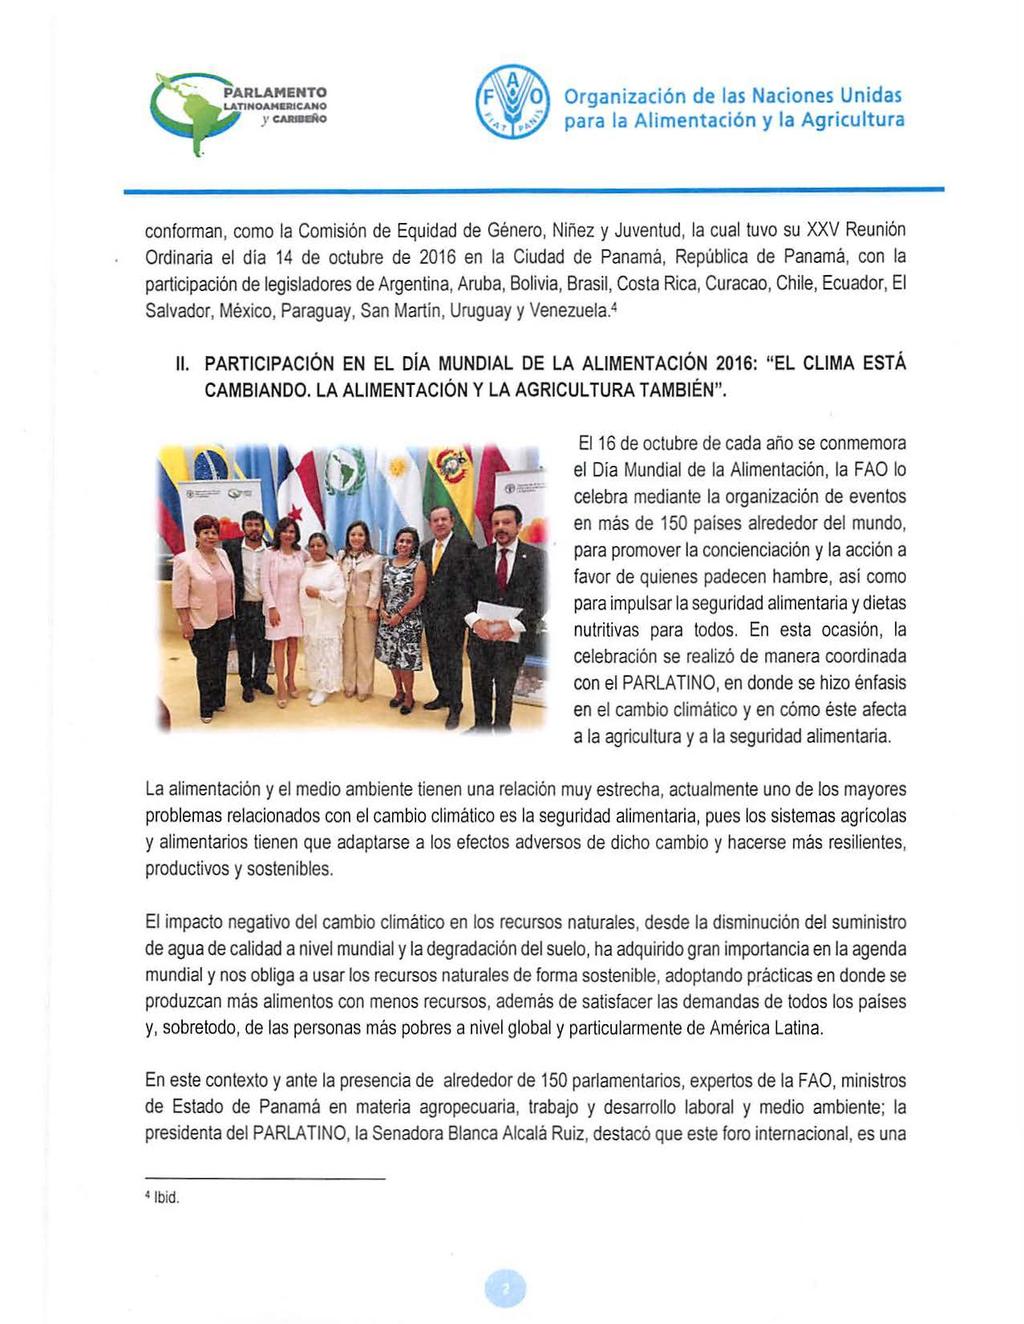 LATlHOAMaRICAHO )' CAJWdo conforman, como la Comisión de Equidad de Género, Niñez y Juventud, la cual tuvo su XXV Reunión Ordinaria el dia 14 de octubre de 2016 en la Ciudad de Panamá, República de